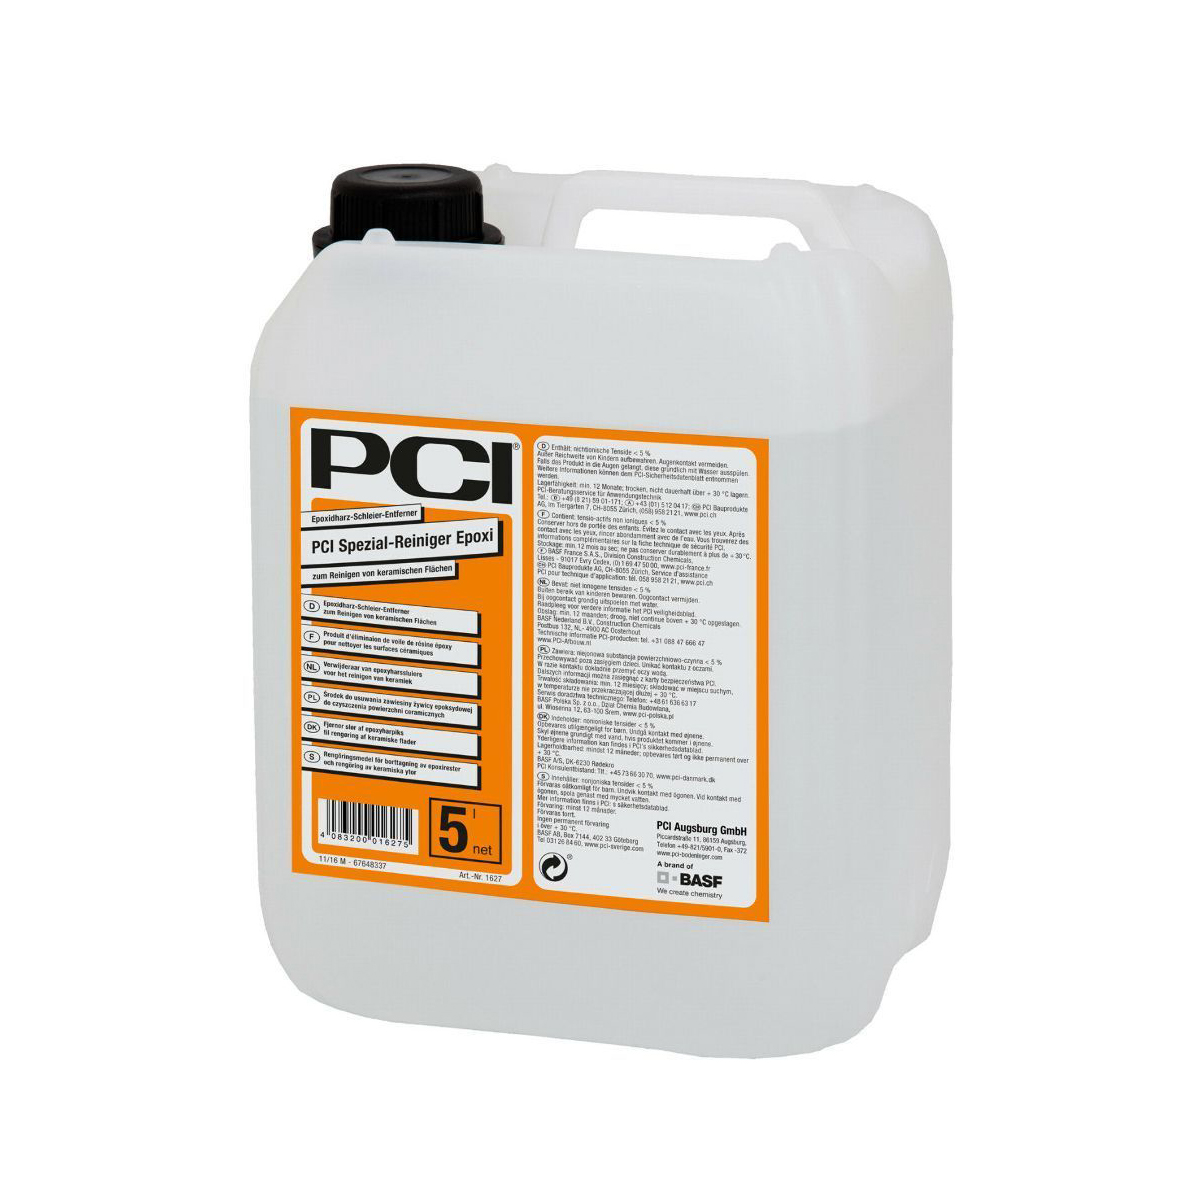 PCI Spezial-Reiniger Epoxi Rengøring af epoxyharpiksudstrygninger på keramiske overflader